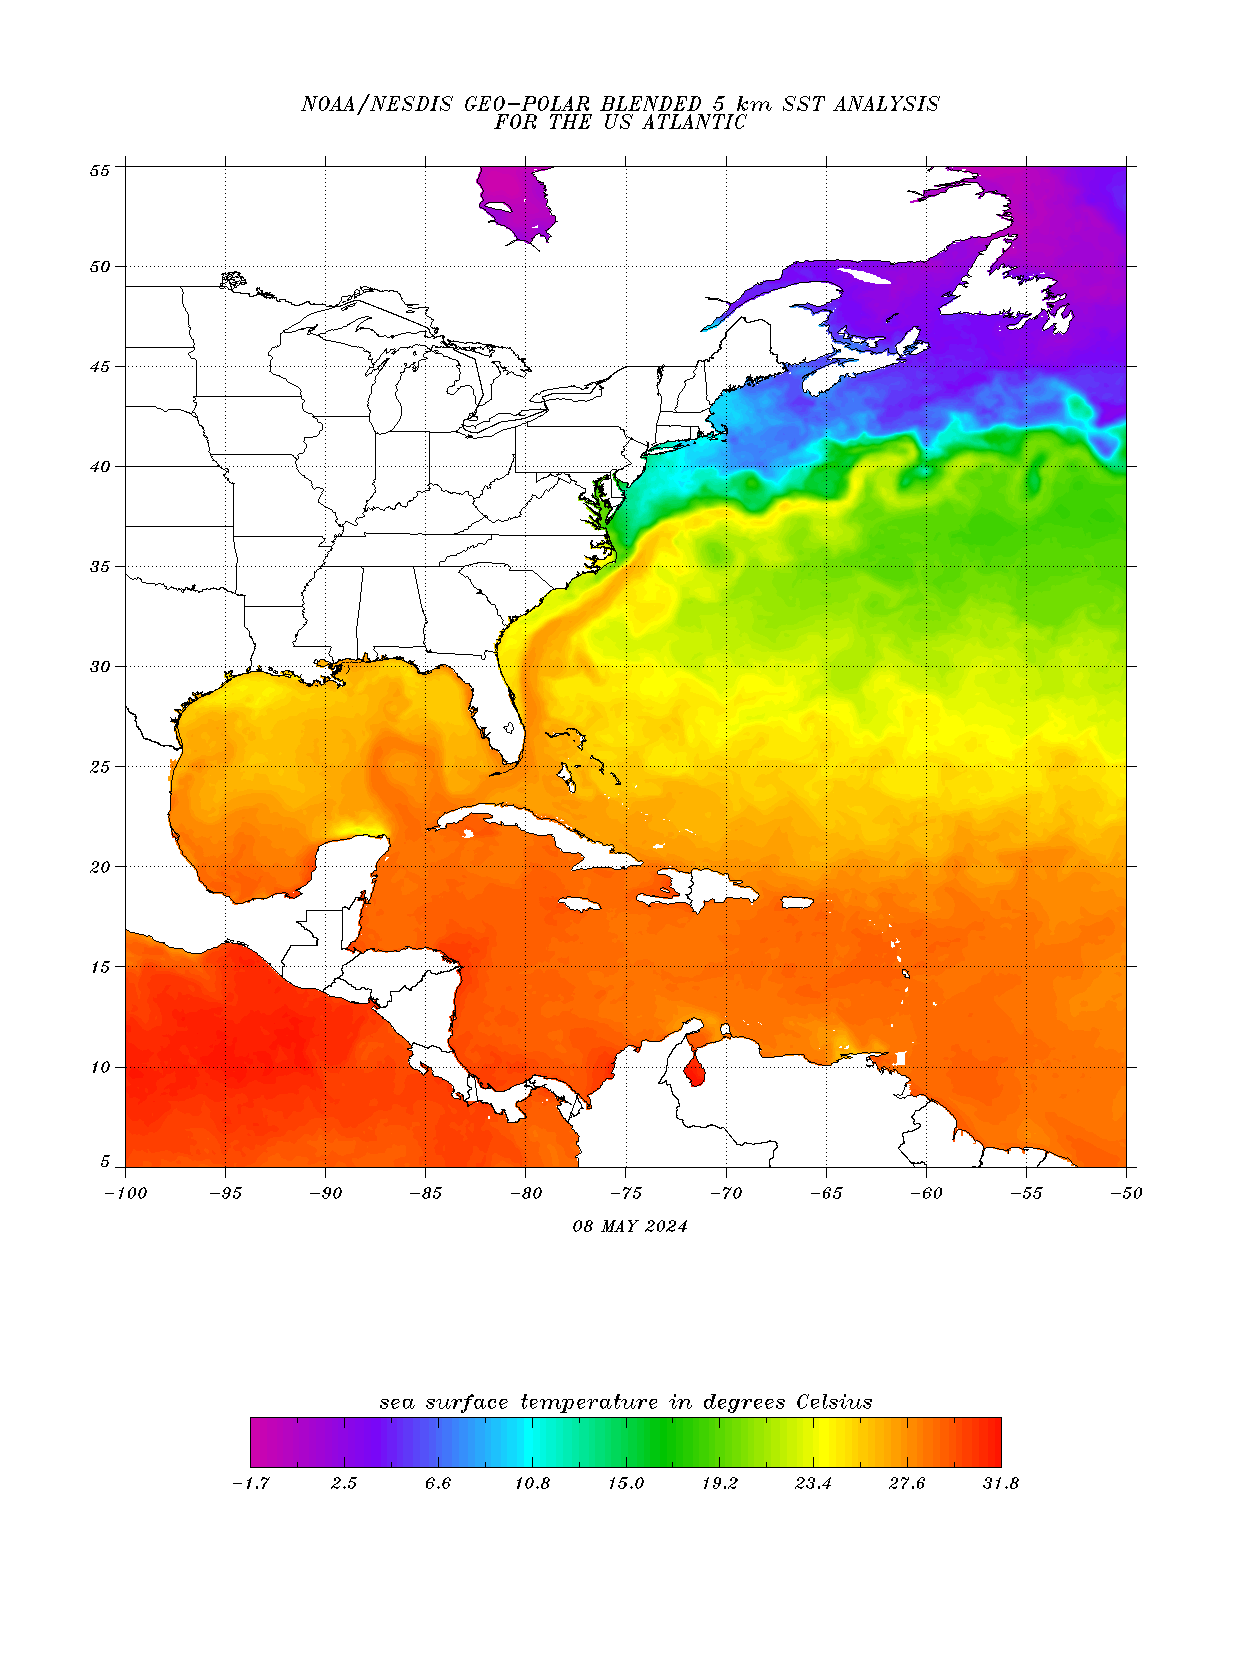 Atlantic Ocean Temperatures